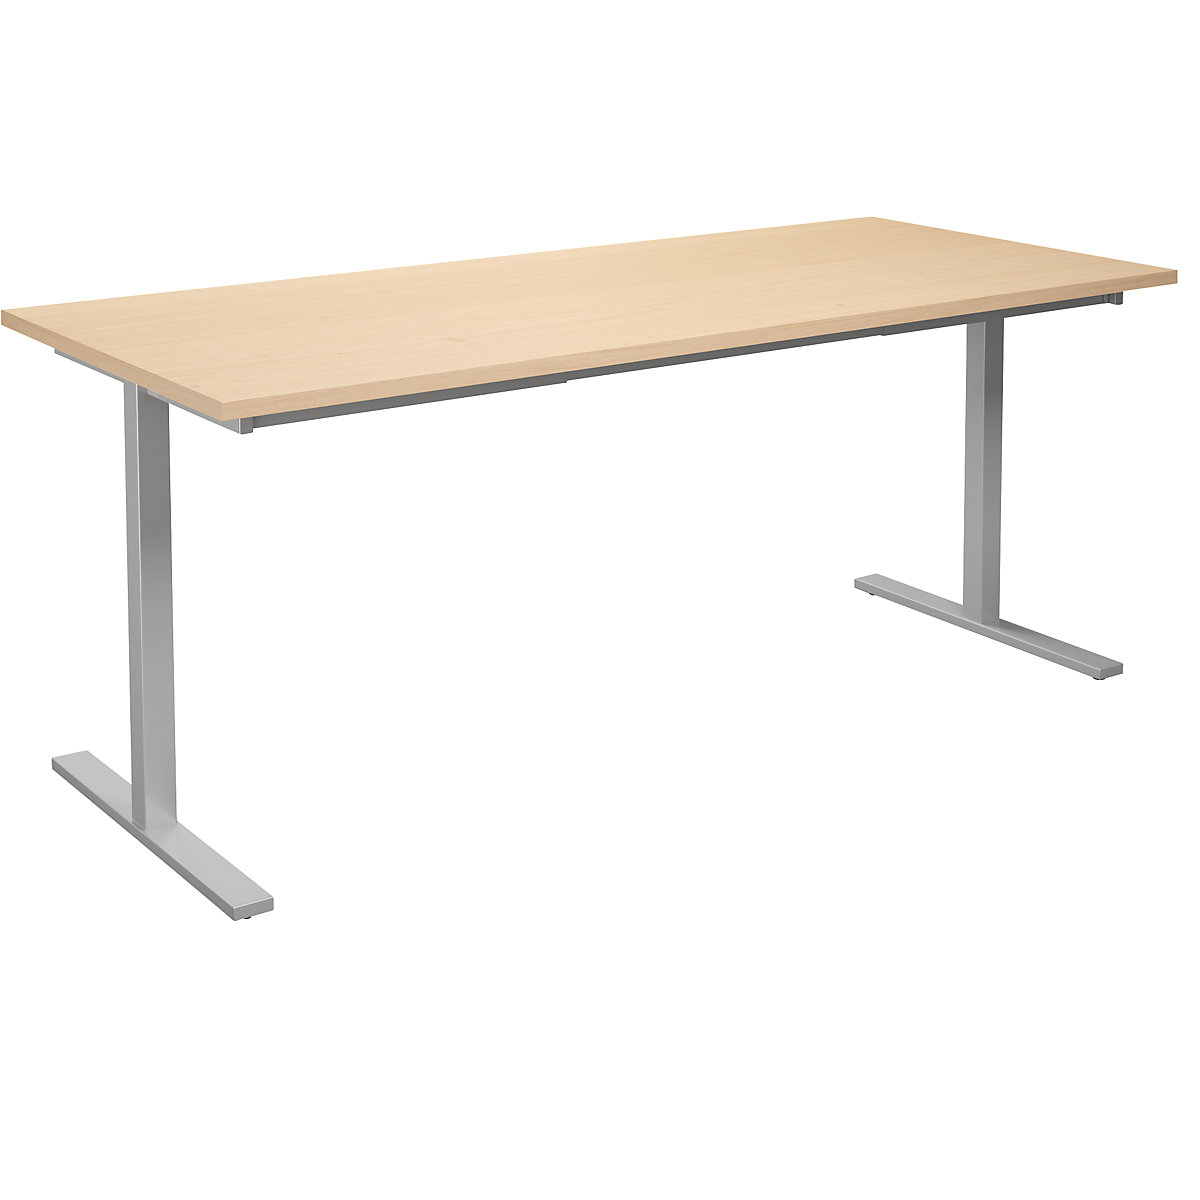 DUO-T multi-purpose desk, straight tabletop, WxD 1800 x 800 mm, birch, silver-6